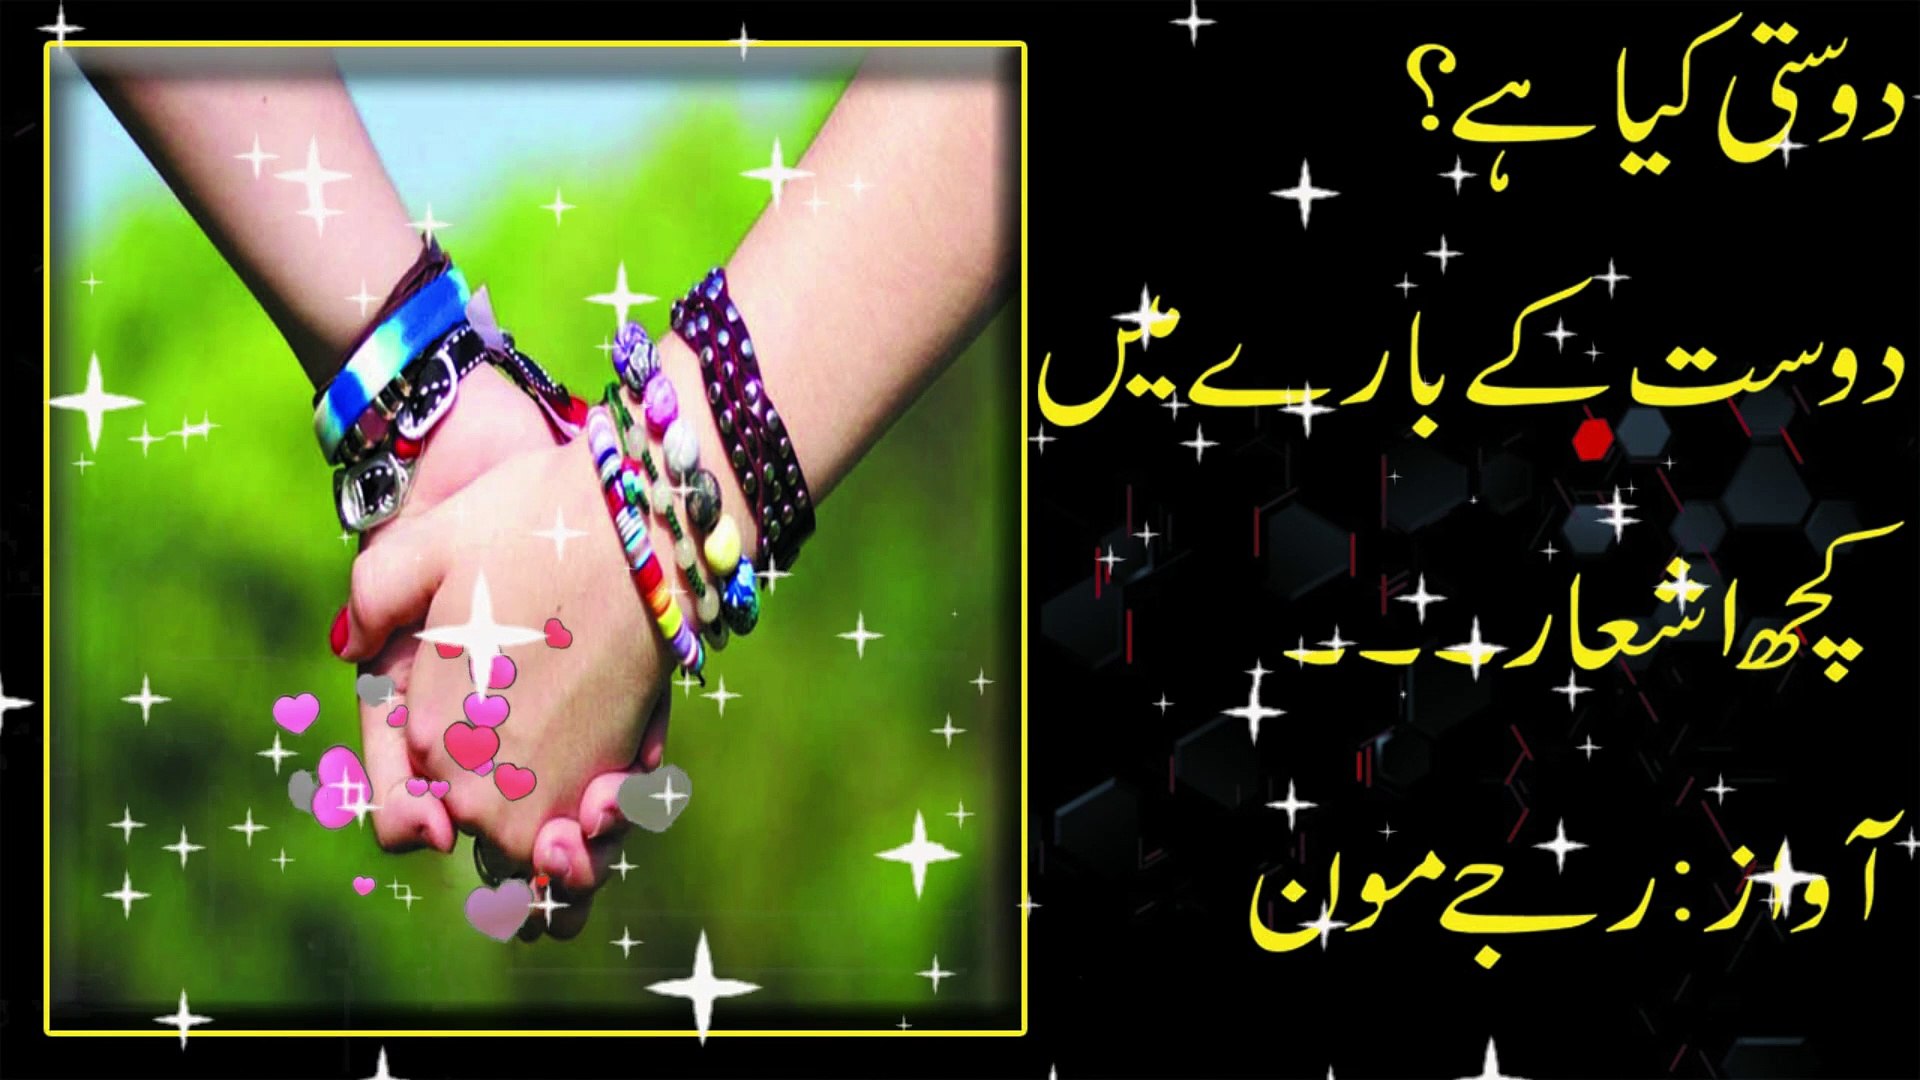 Dosti Urdu Poetry Urdu Quotes Dosti Friendship Poetry Urdu Dosti Shayari Video Dailymotion